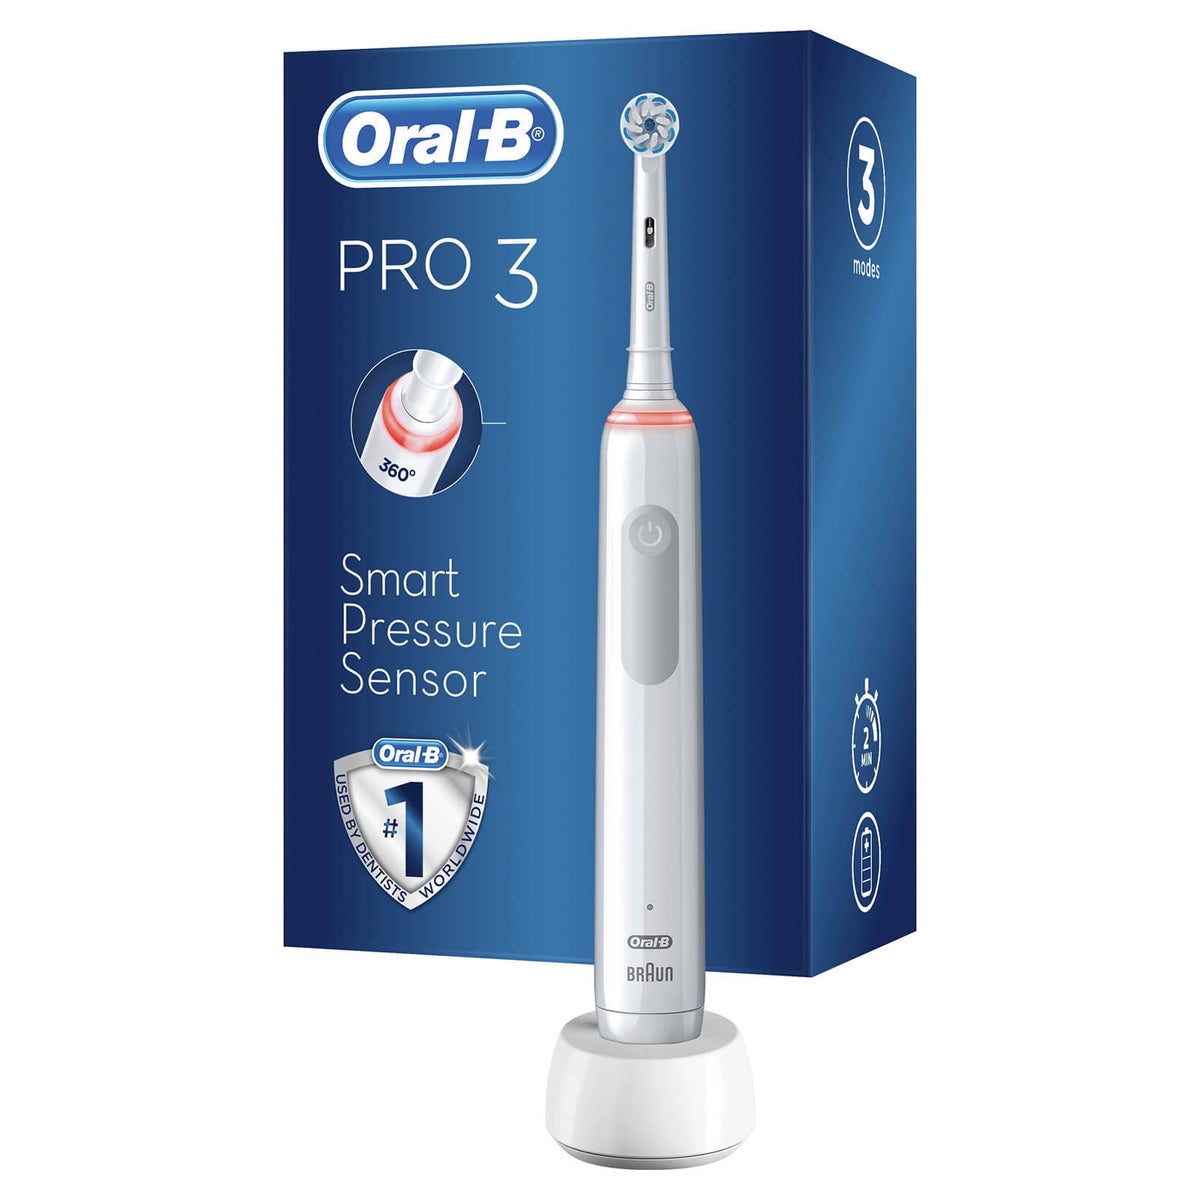 Oral-B Pro 3 Smart Pressure Censor